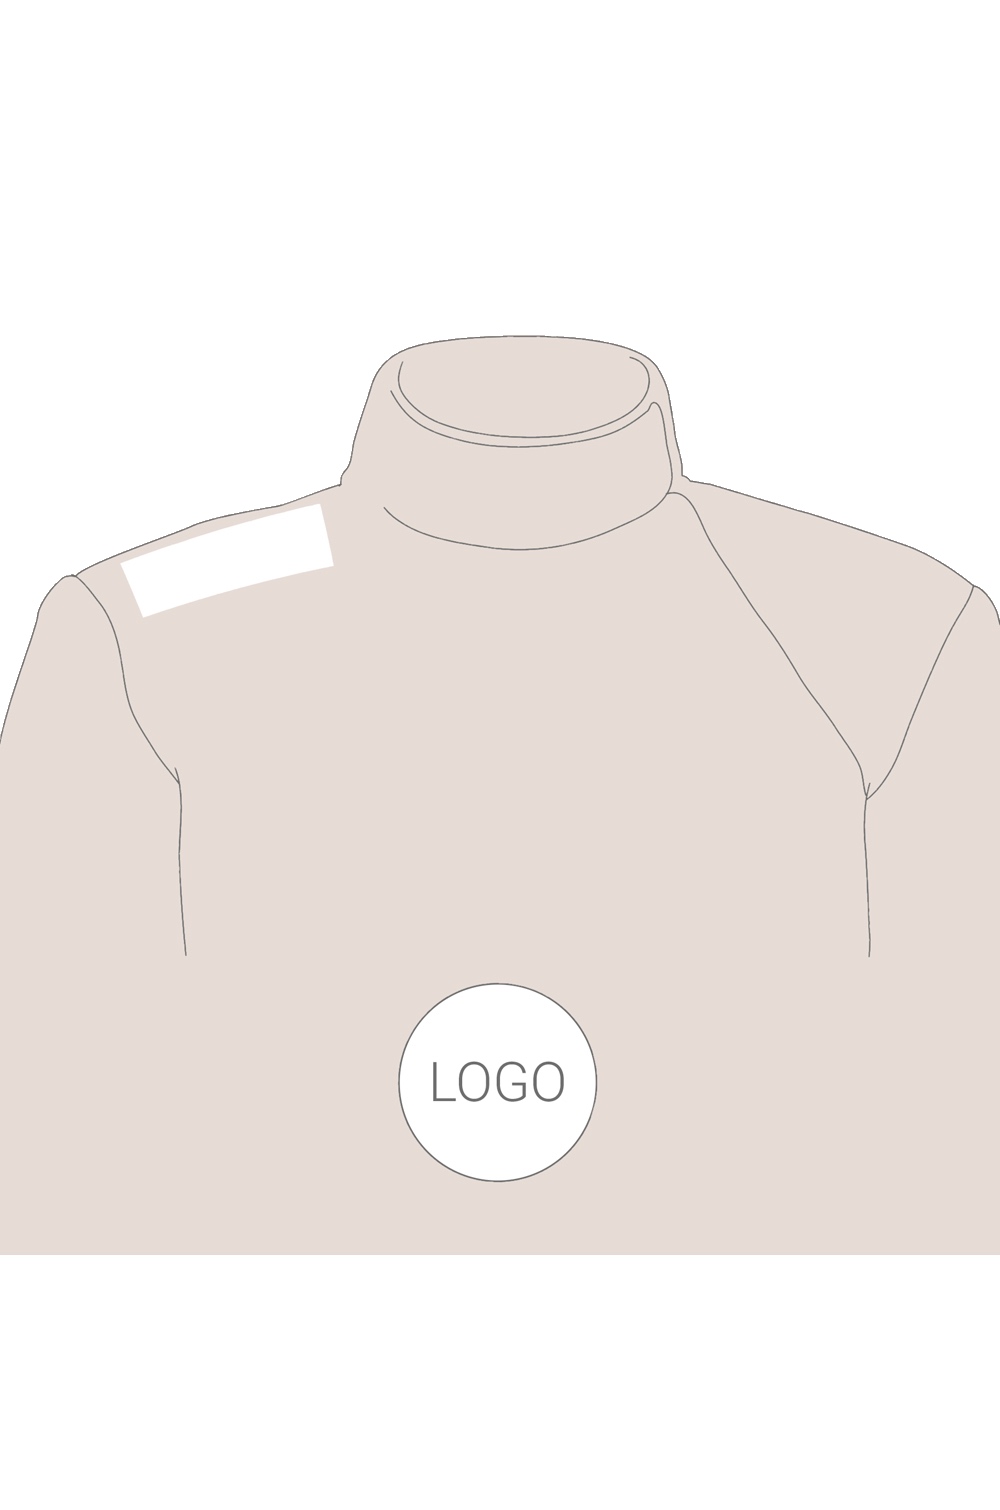 Printing of Sponsorship Logos on Fencing Jacket